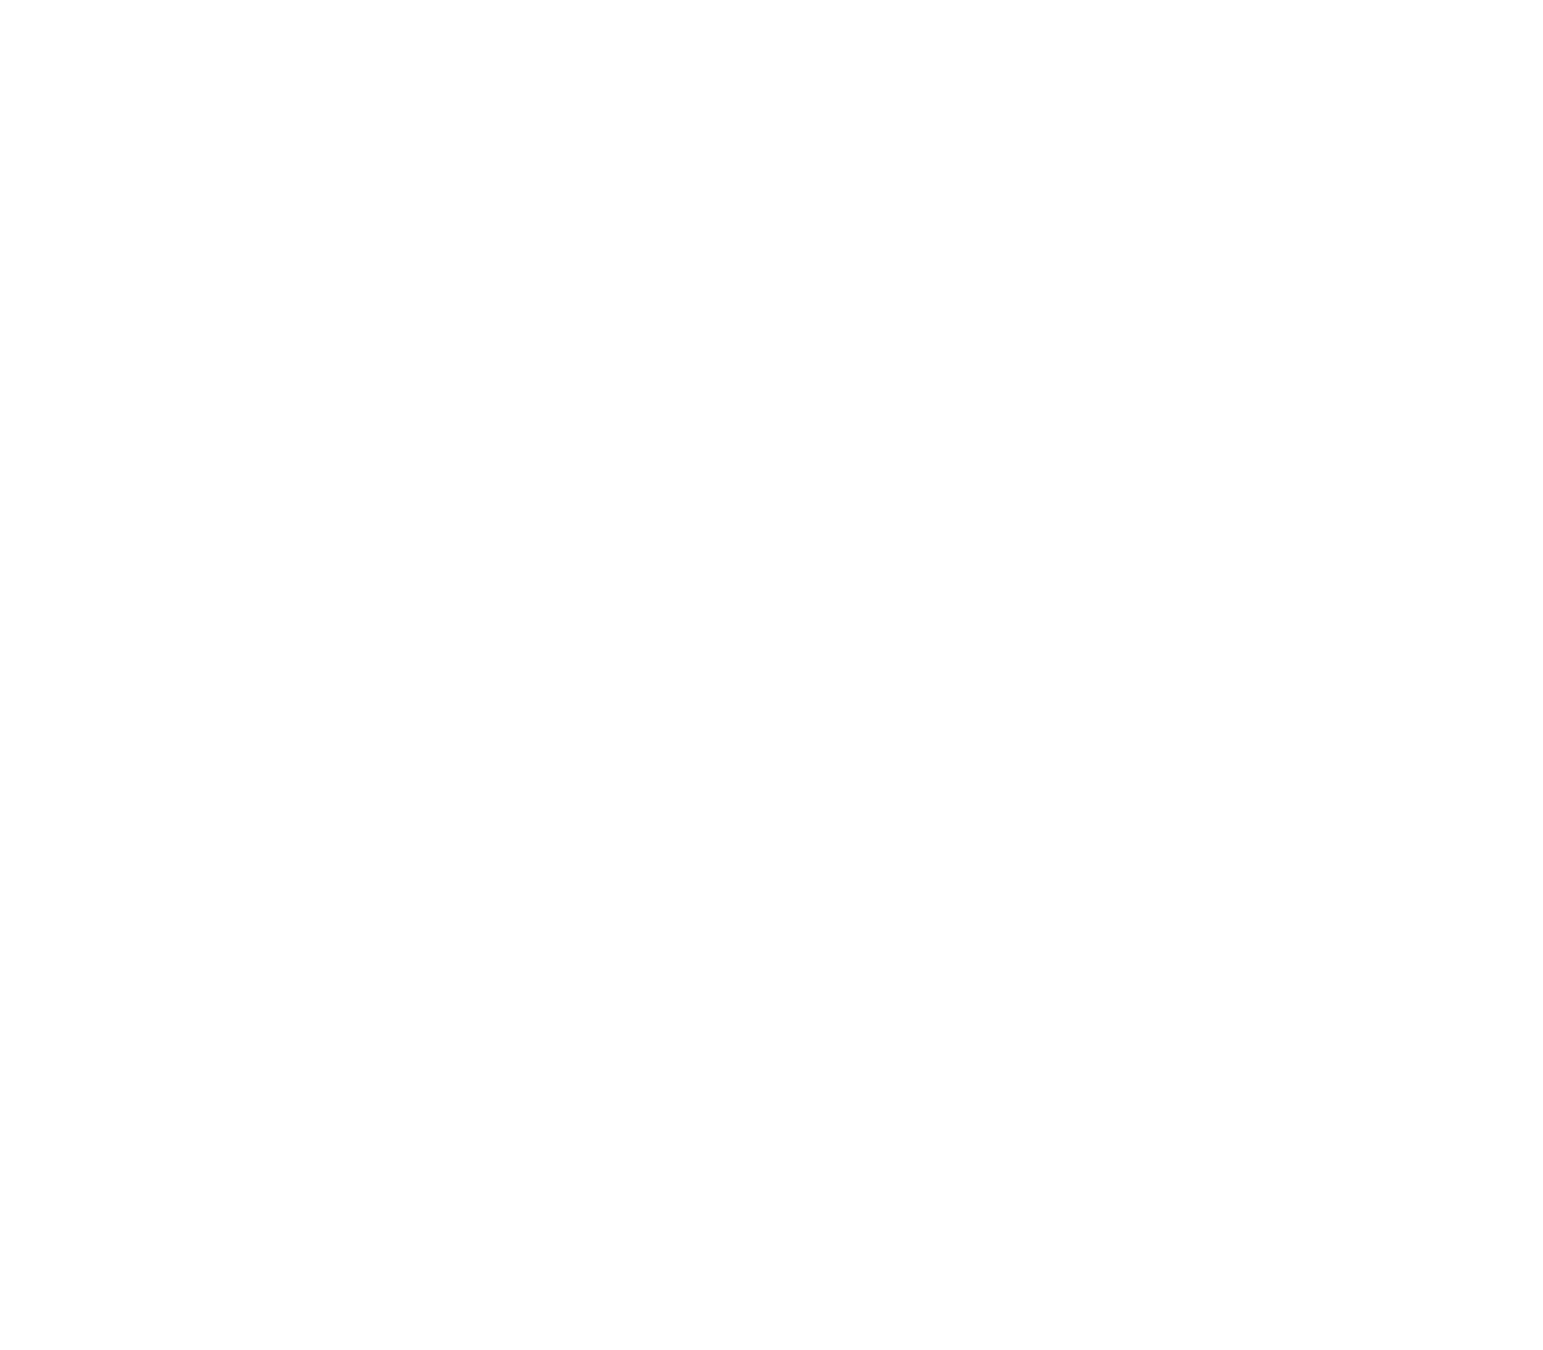 Texican Court Logo